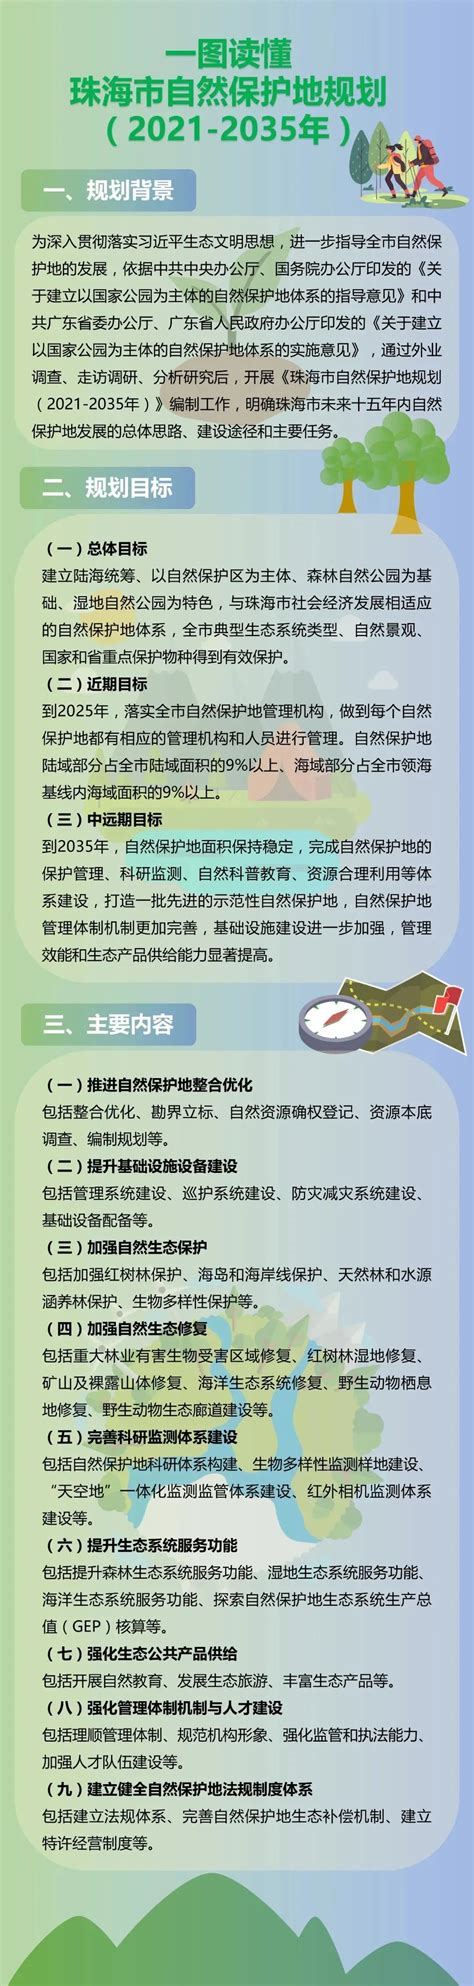 一图读懂 | 珠海市自然保护地规划（2021-2035年） - 中国测绘学会官网